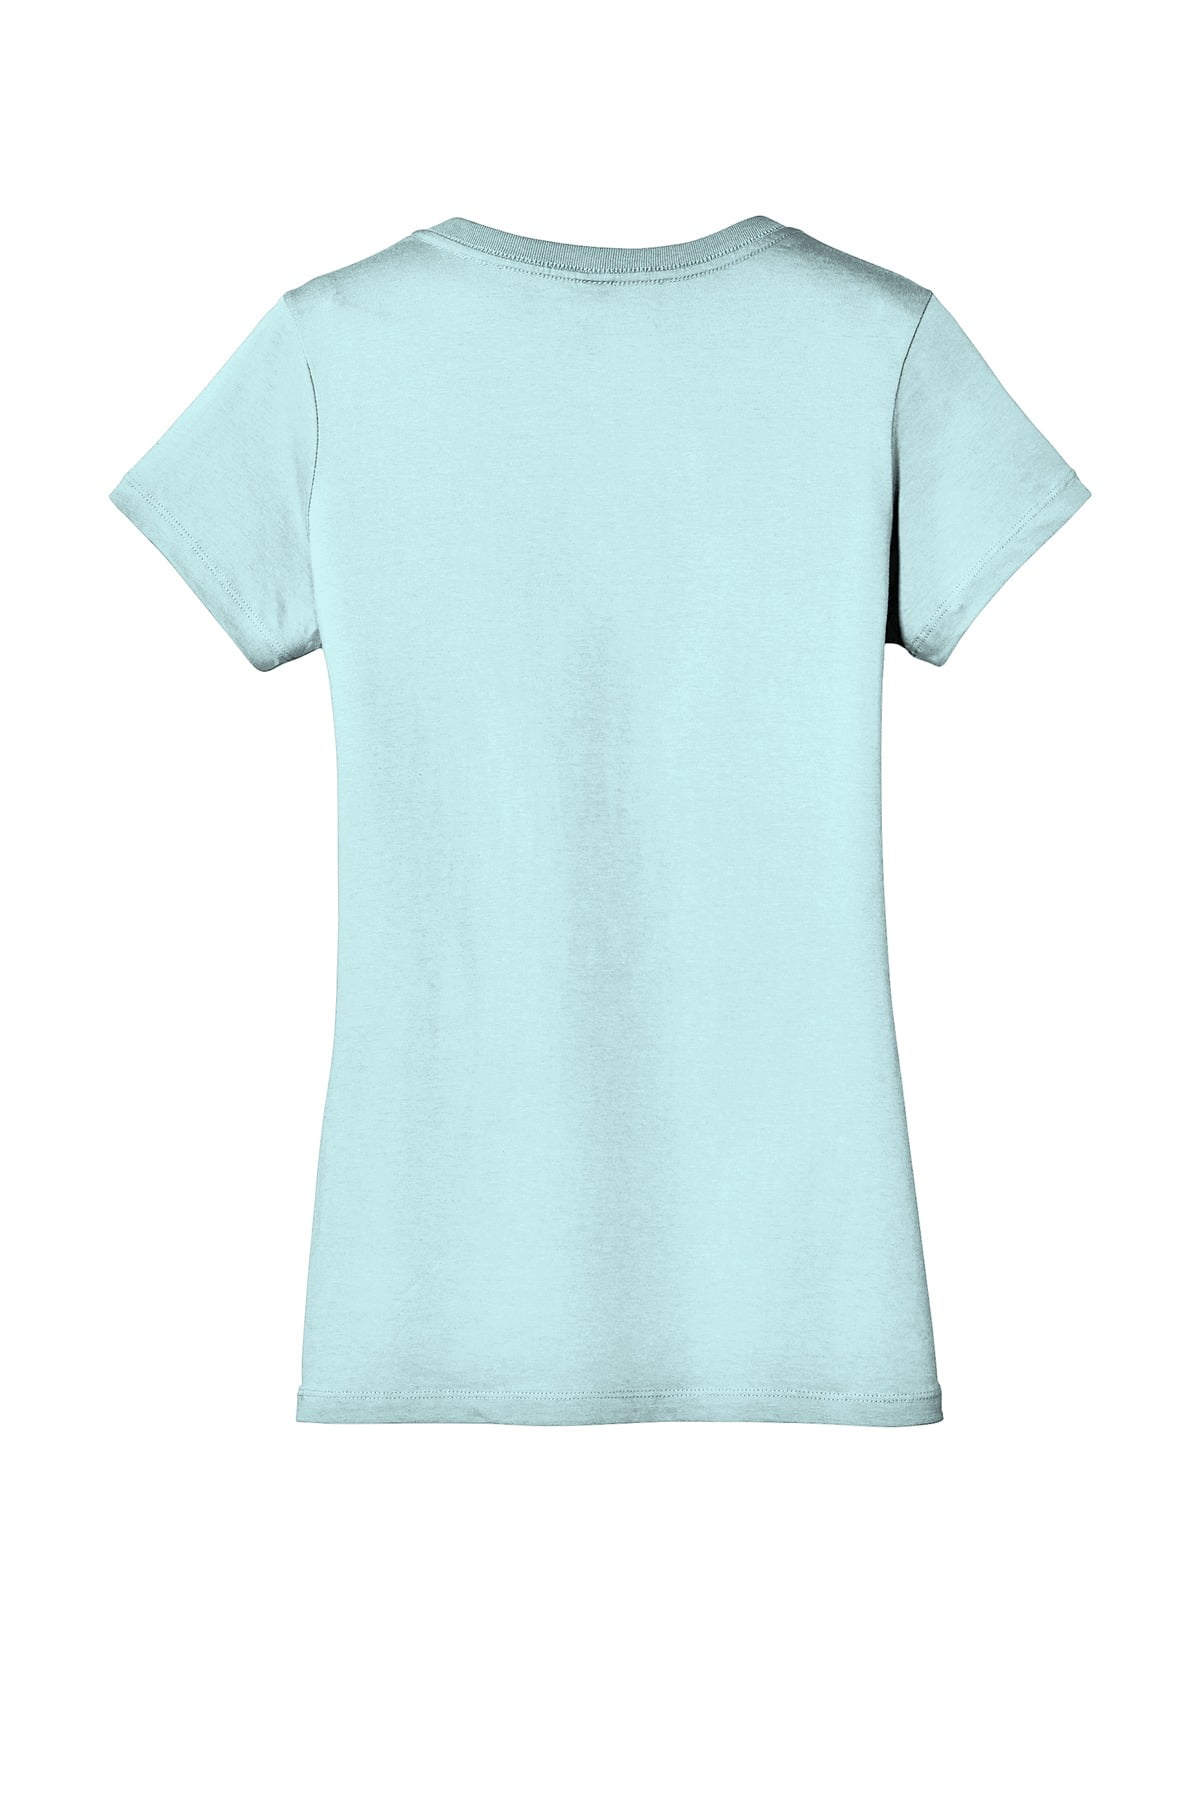 Port & Co Adult Female Women Plain Short Sleeves T-Shirt Light Blue Medium